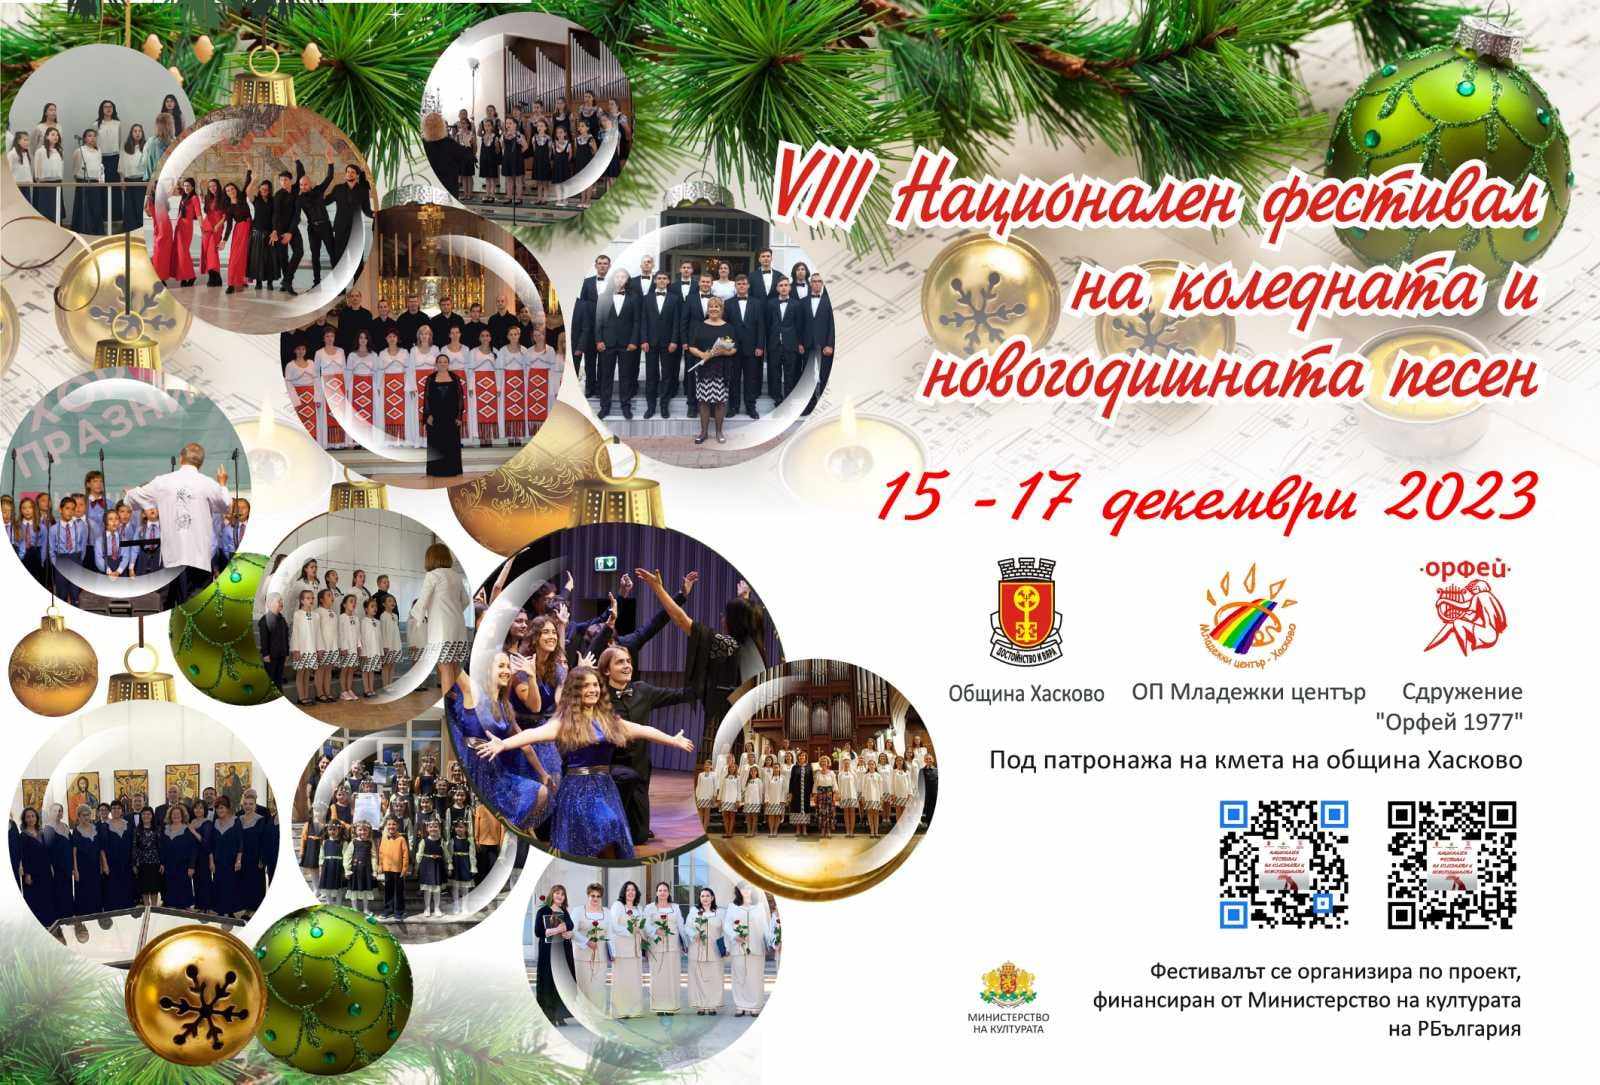 Осми национален фестивал на коледната и новогодишната песен ще се